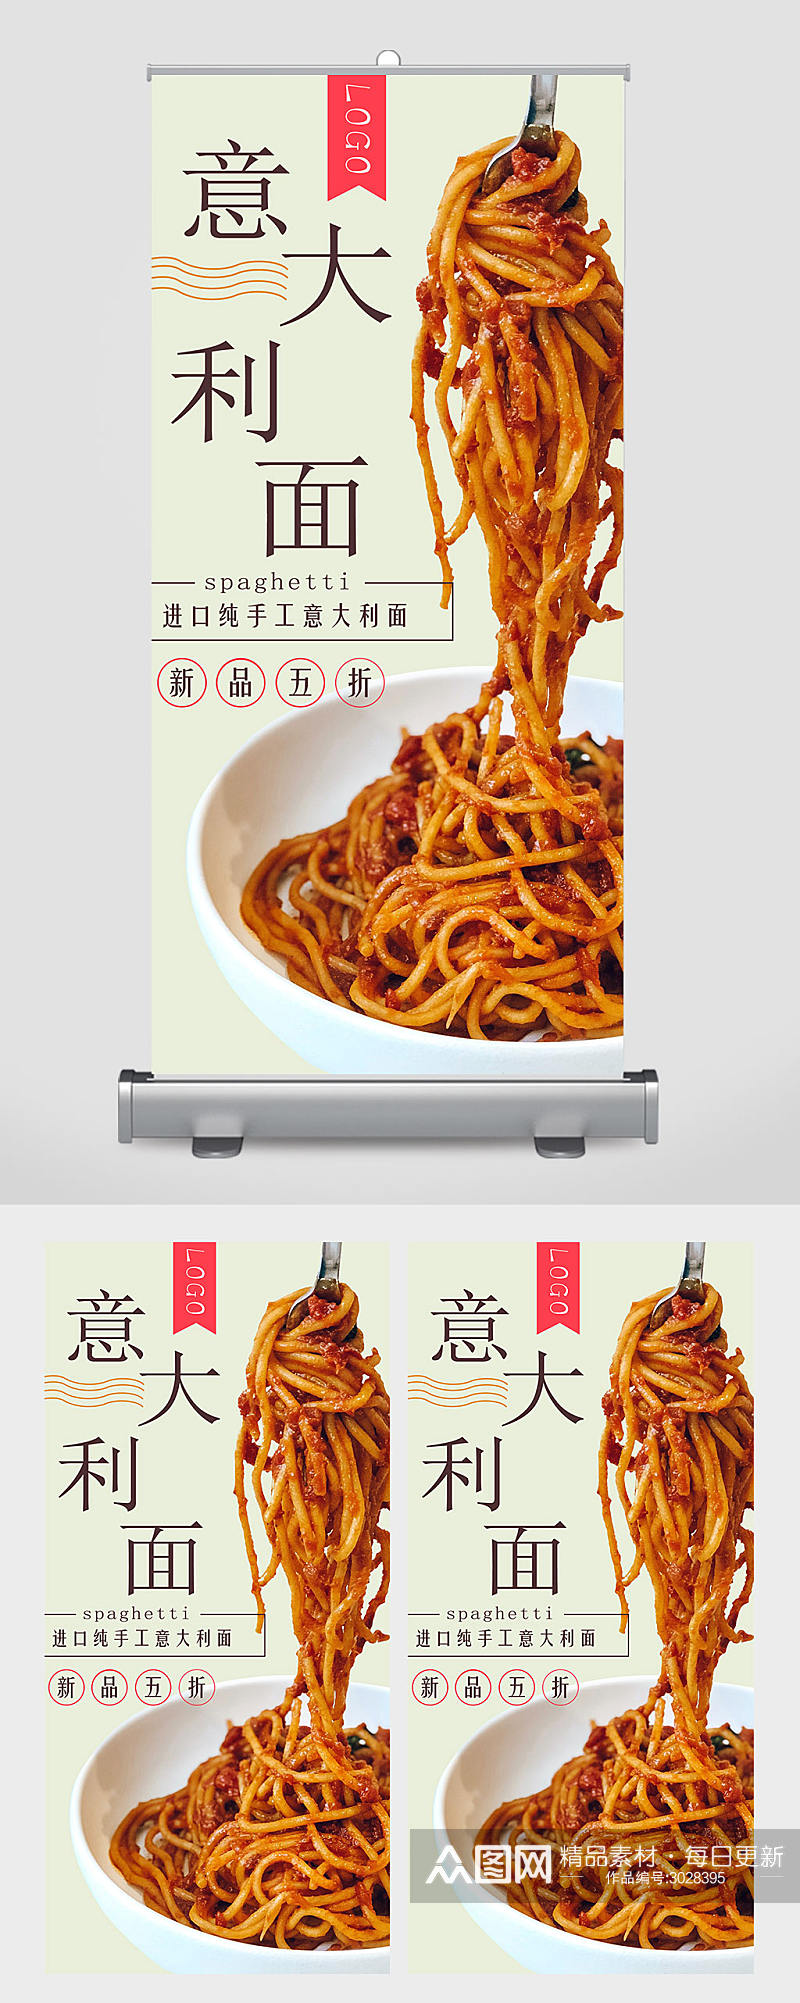 意大利面食物餐厅宣传海报设计素材